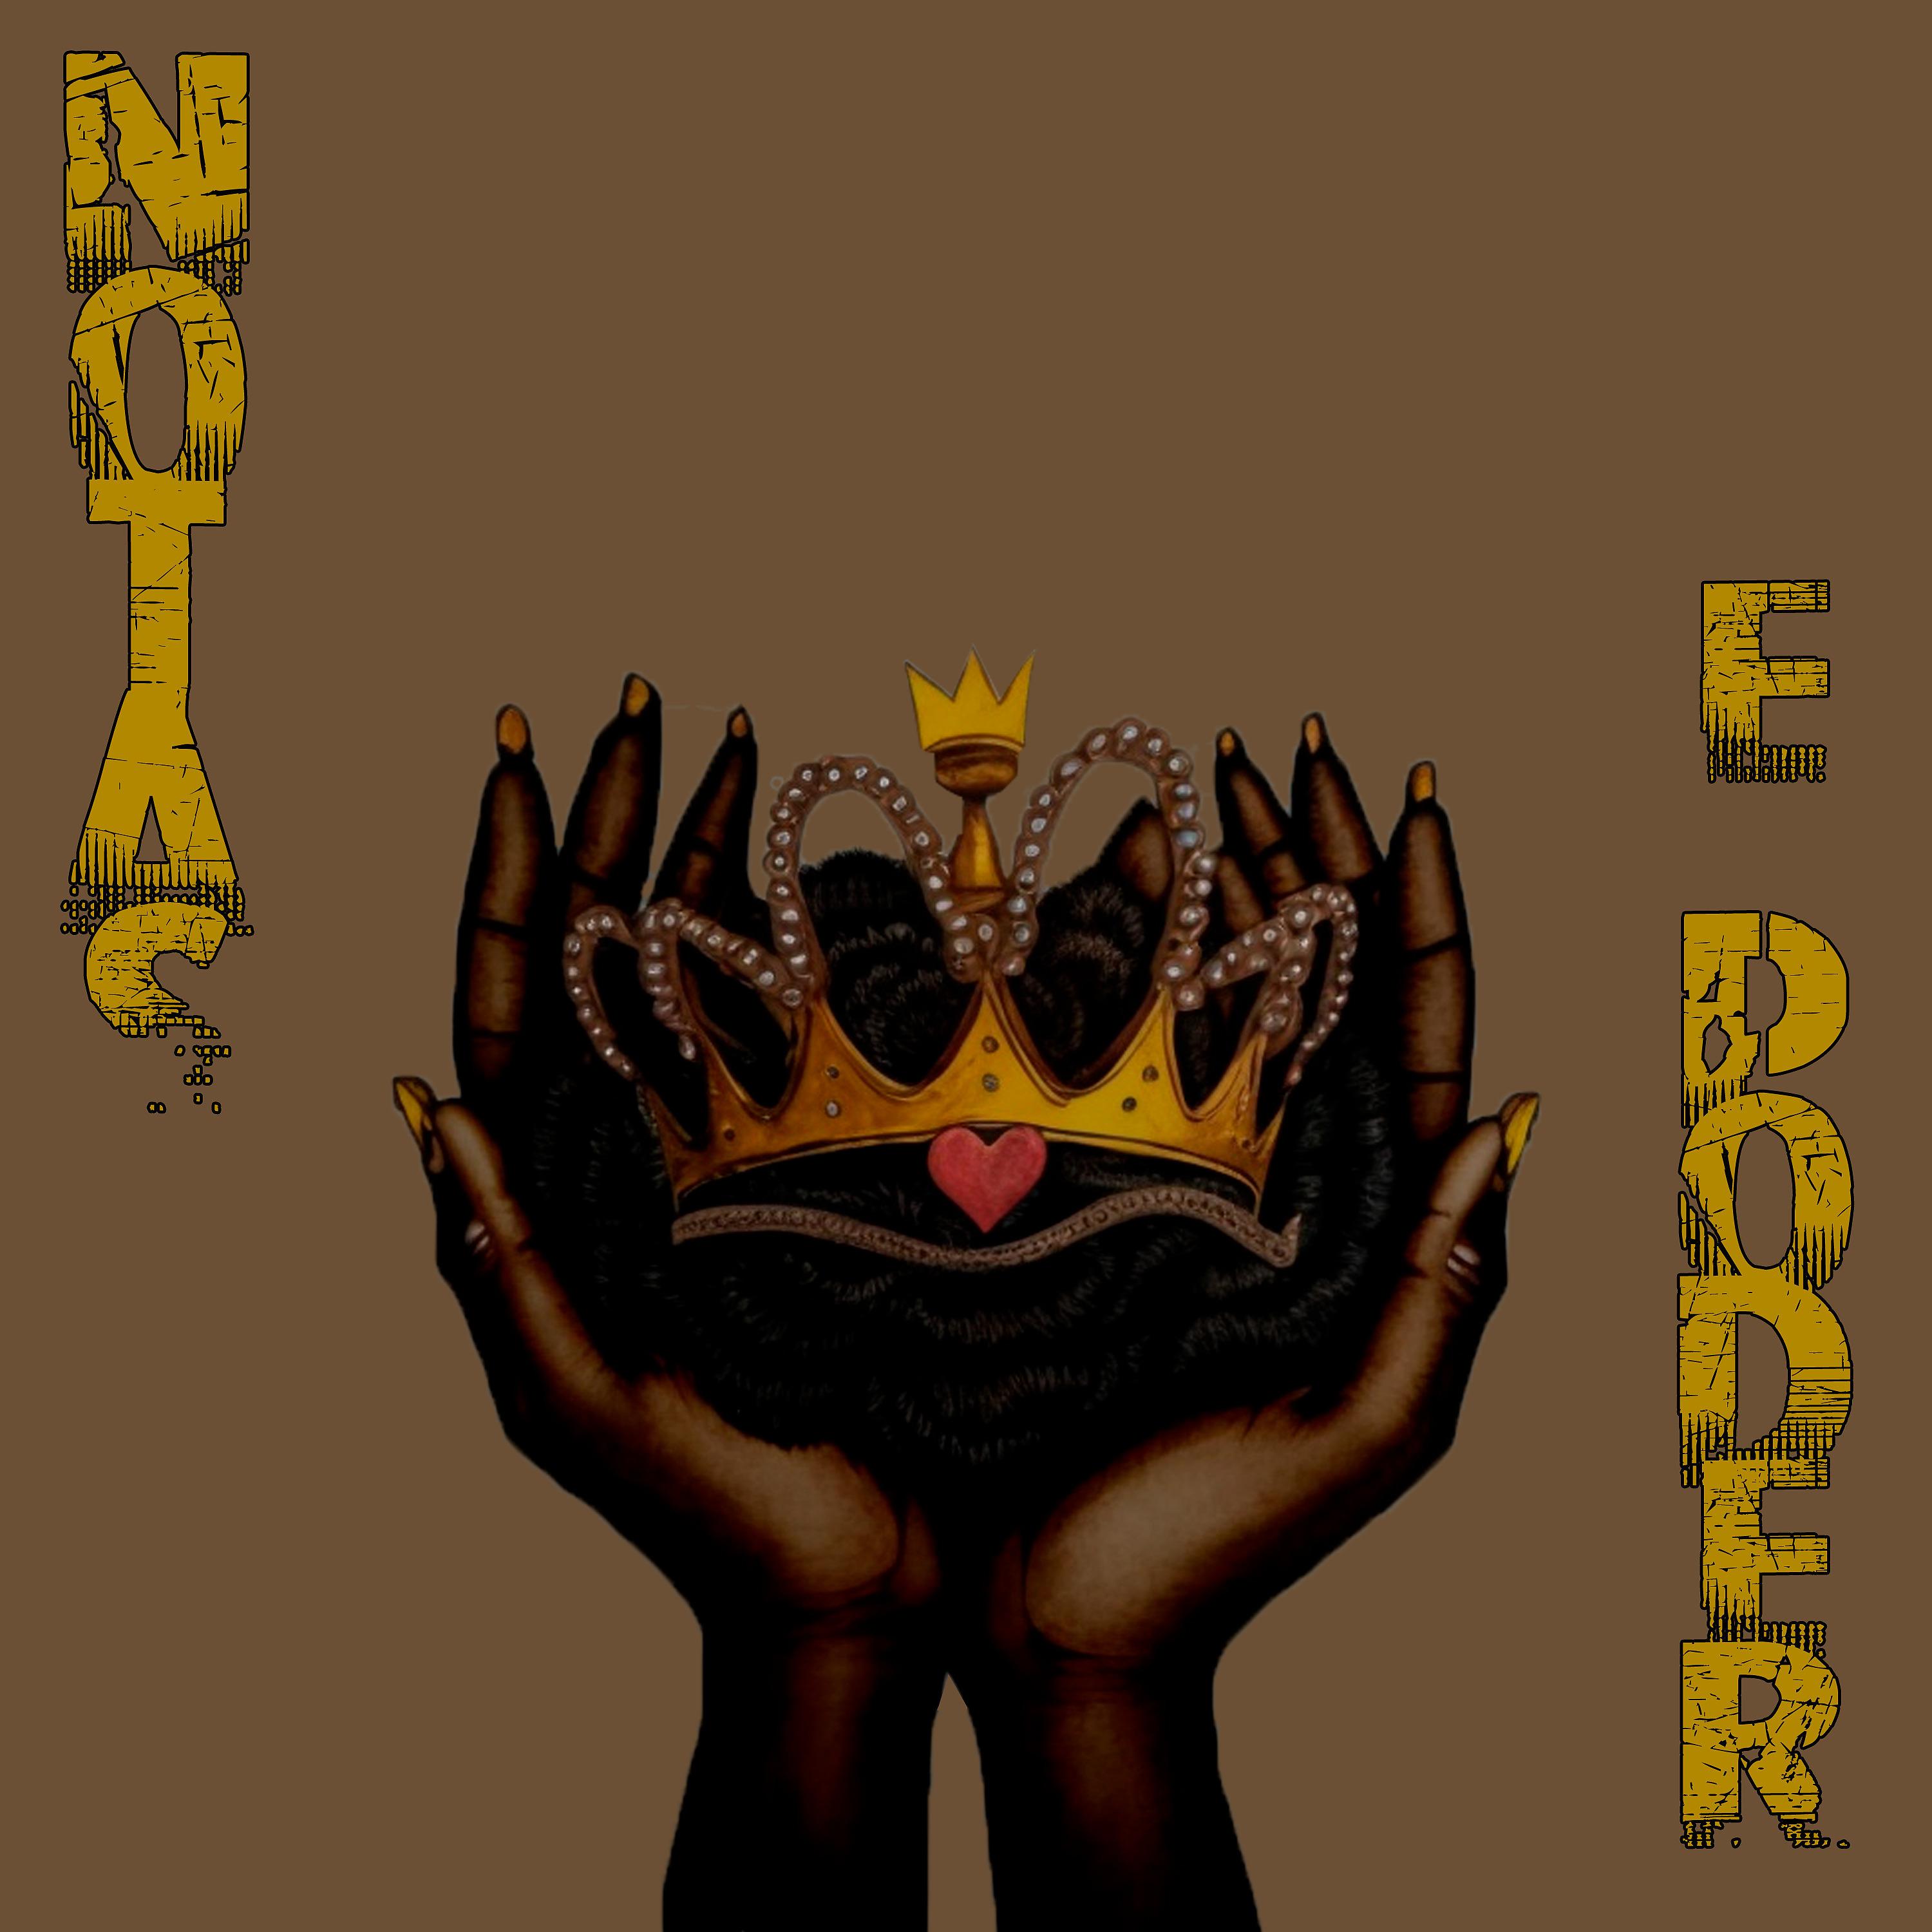 Постер альбома Notas e Poder